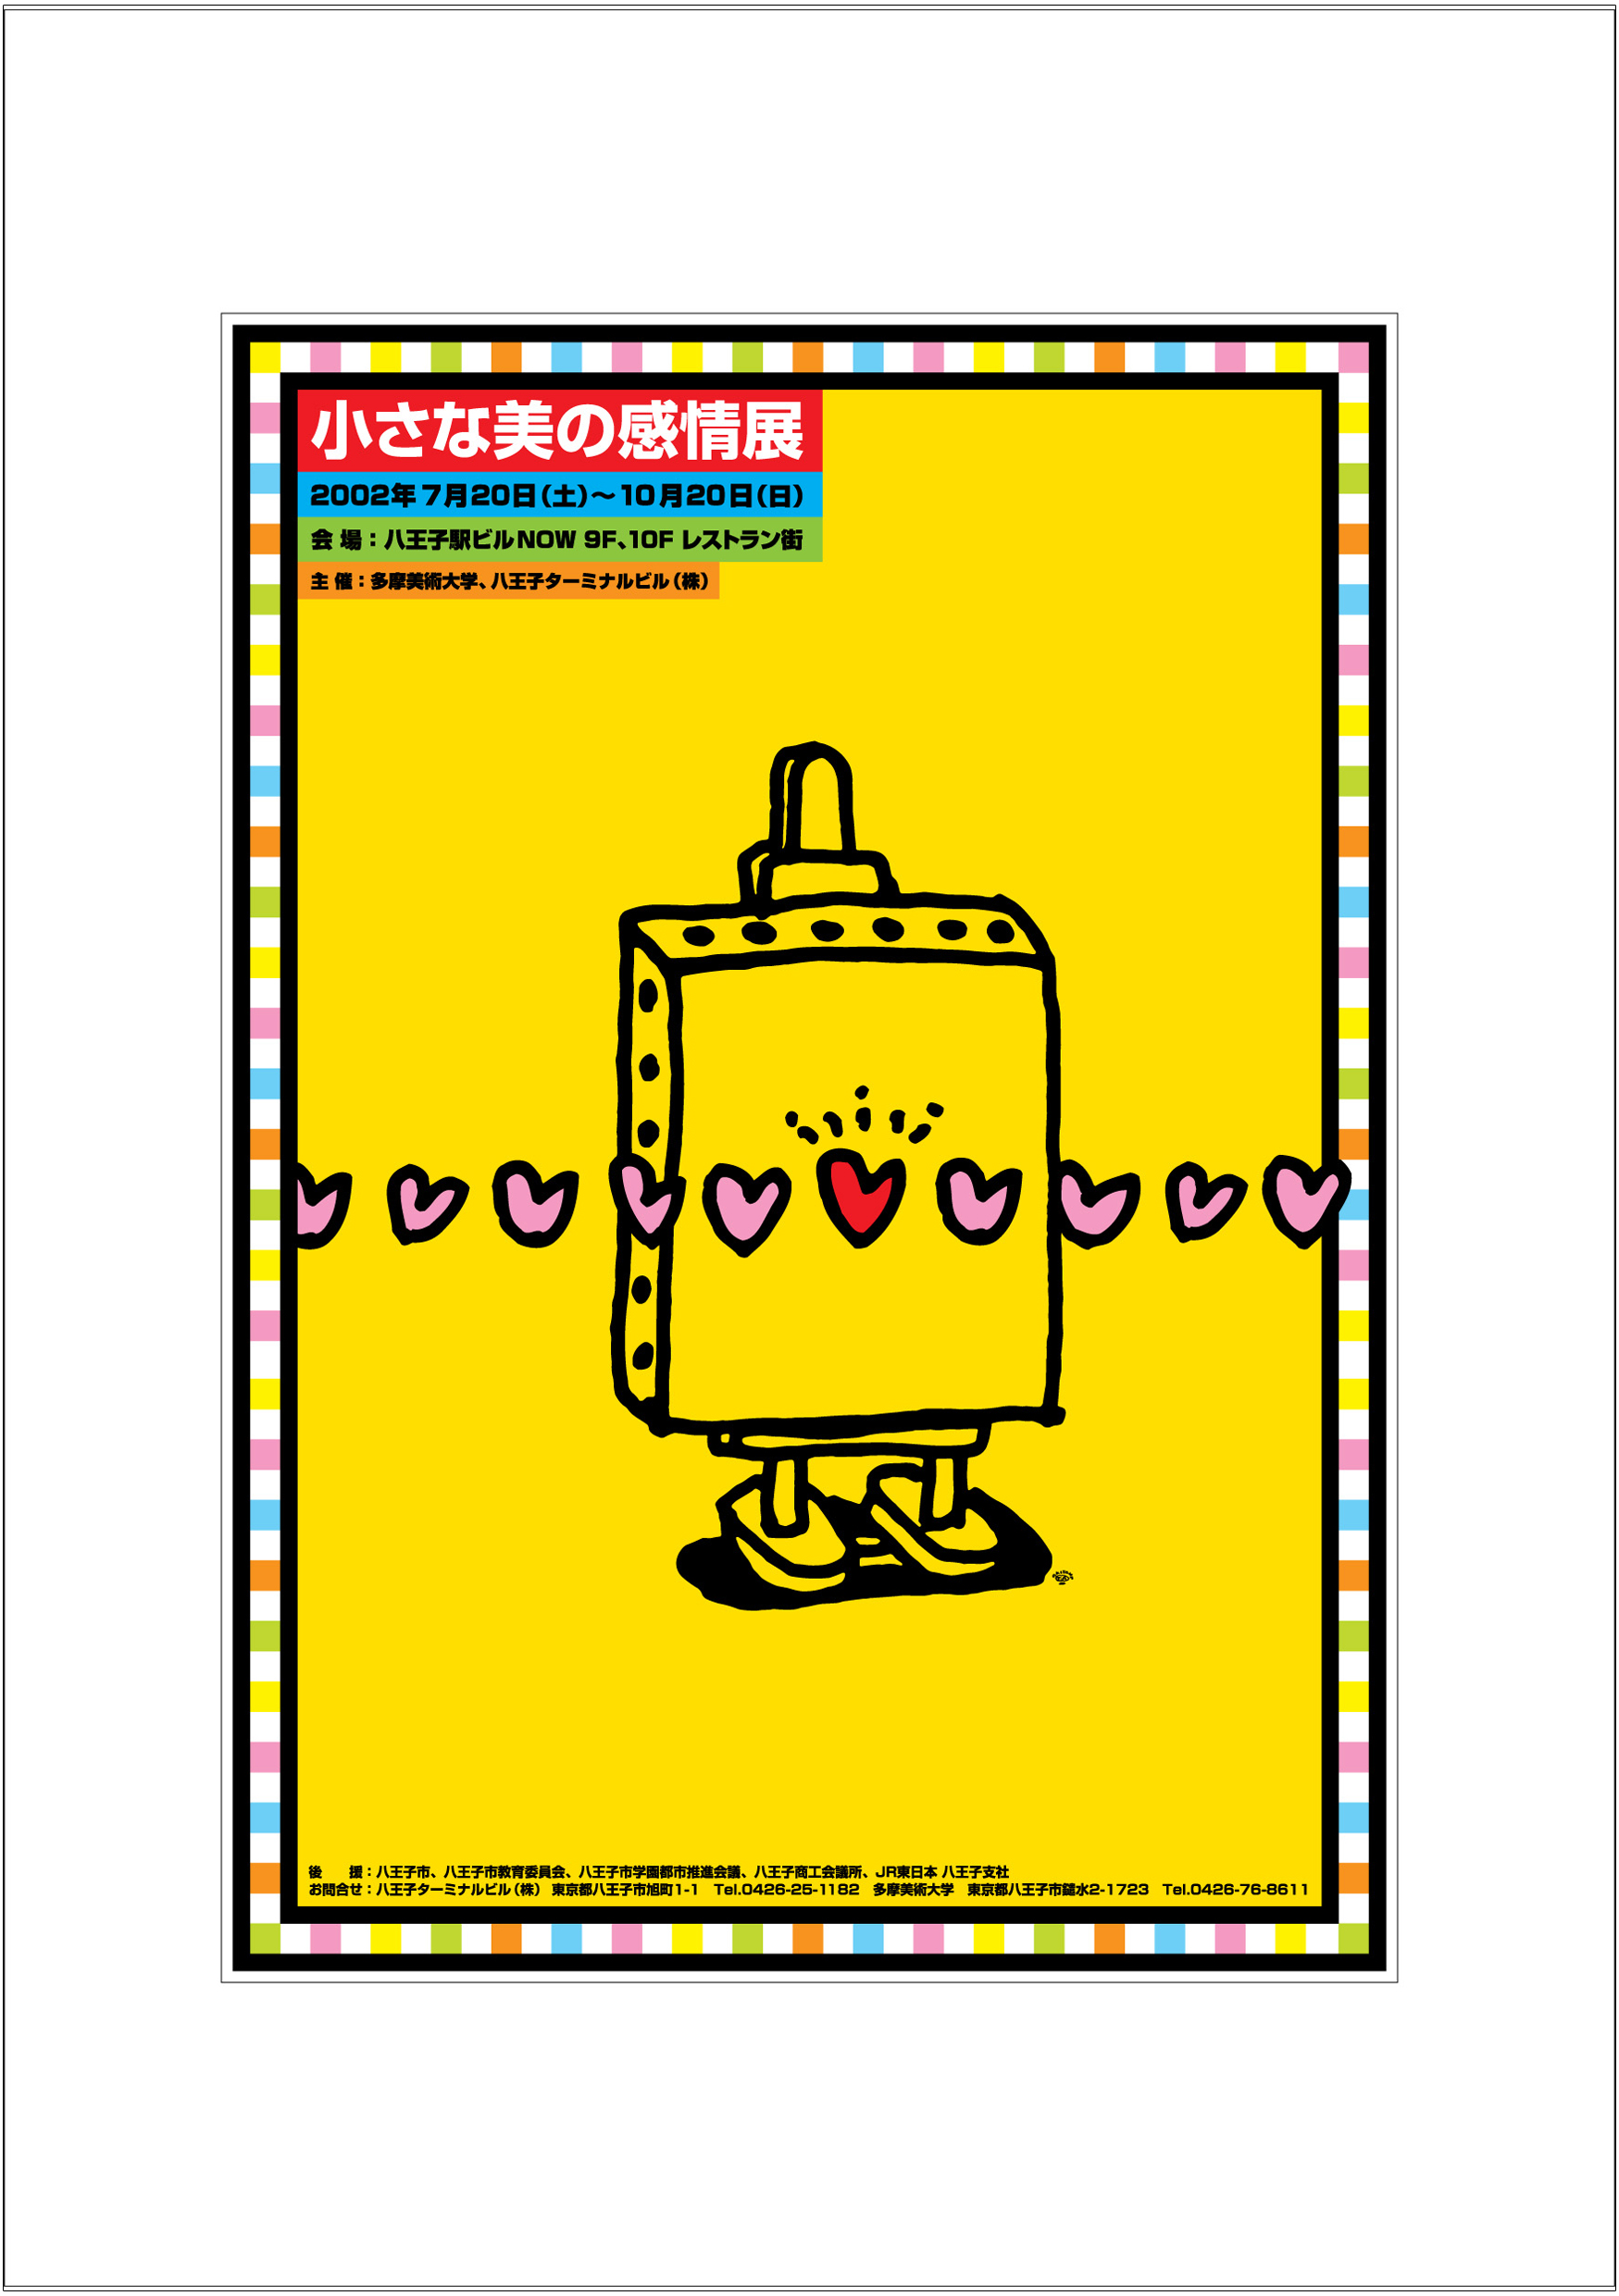 ポスターアーティスト秋山孝が2008年に制作したアートカード「アートカード ポスター 2002 04」